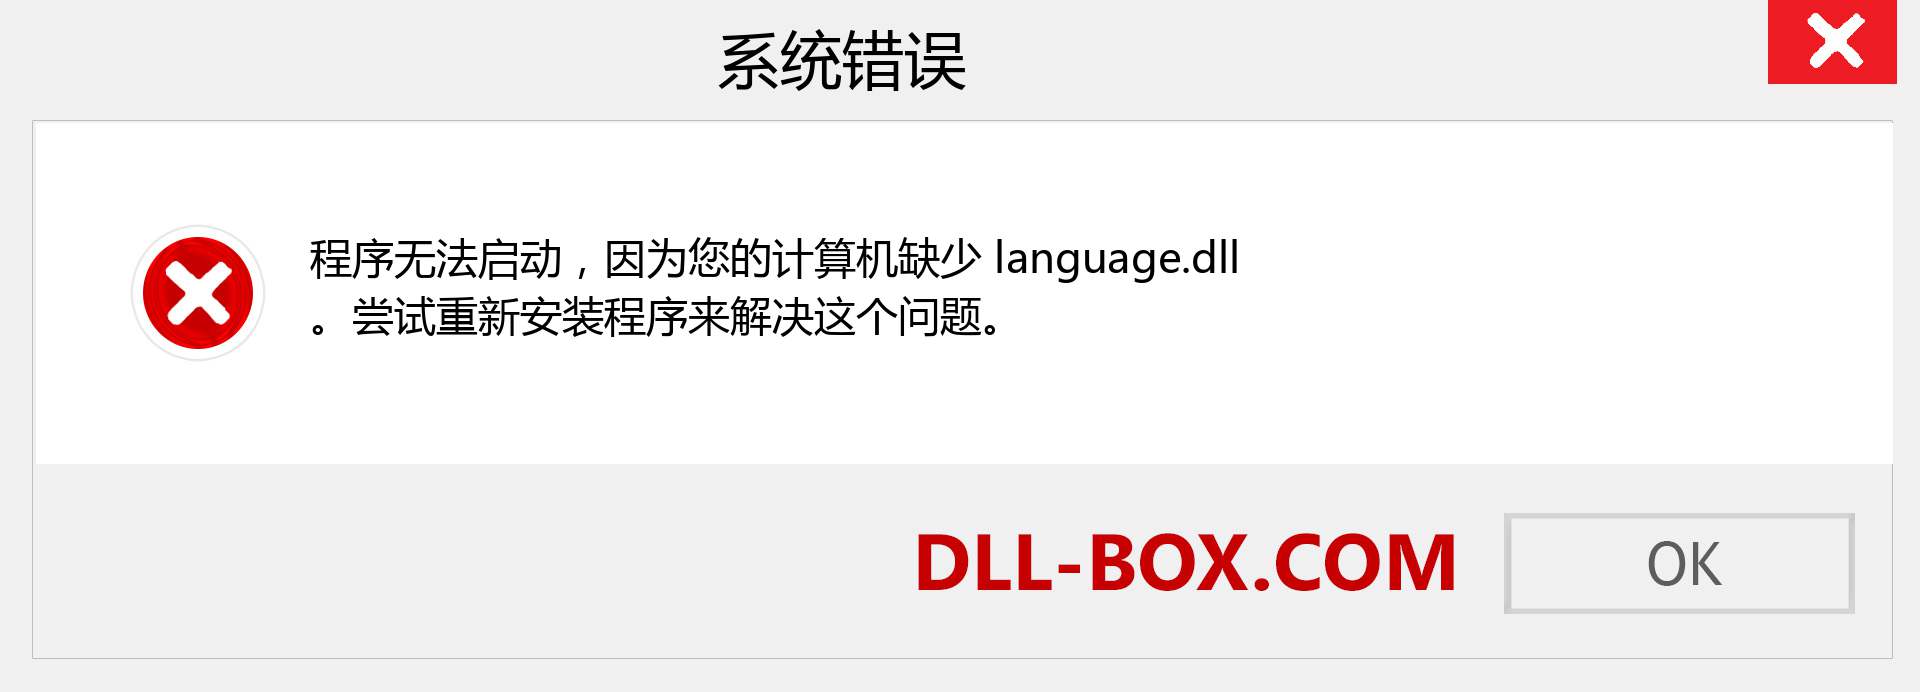 language.dll 文件丢失？。 适用于 Windows 7、8、10 的下载 - 修复 Windows、照片、图像上的 language dll 丢失错误